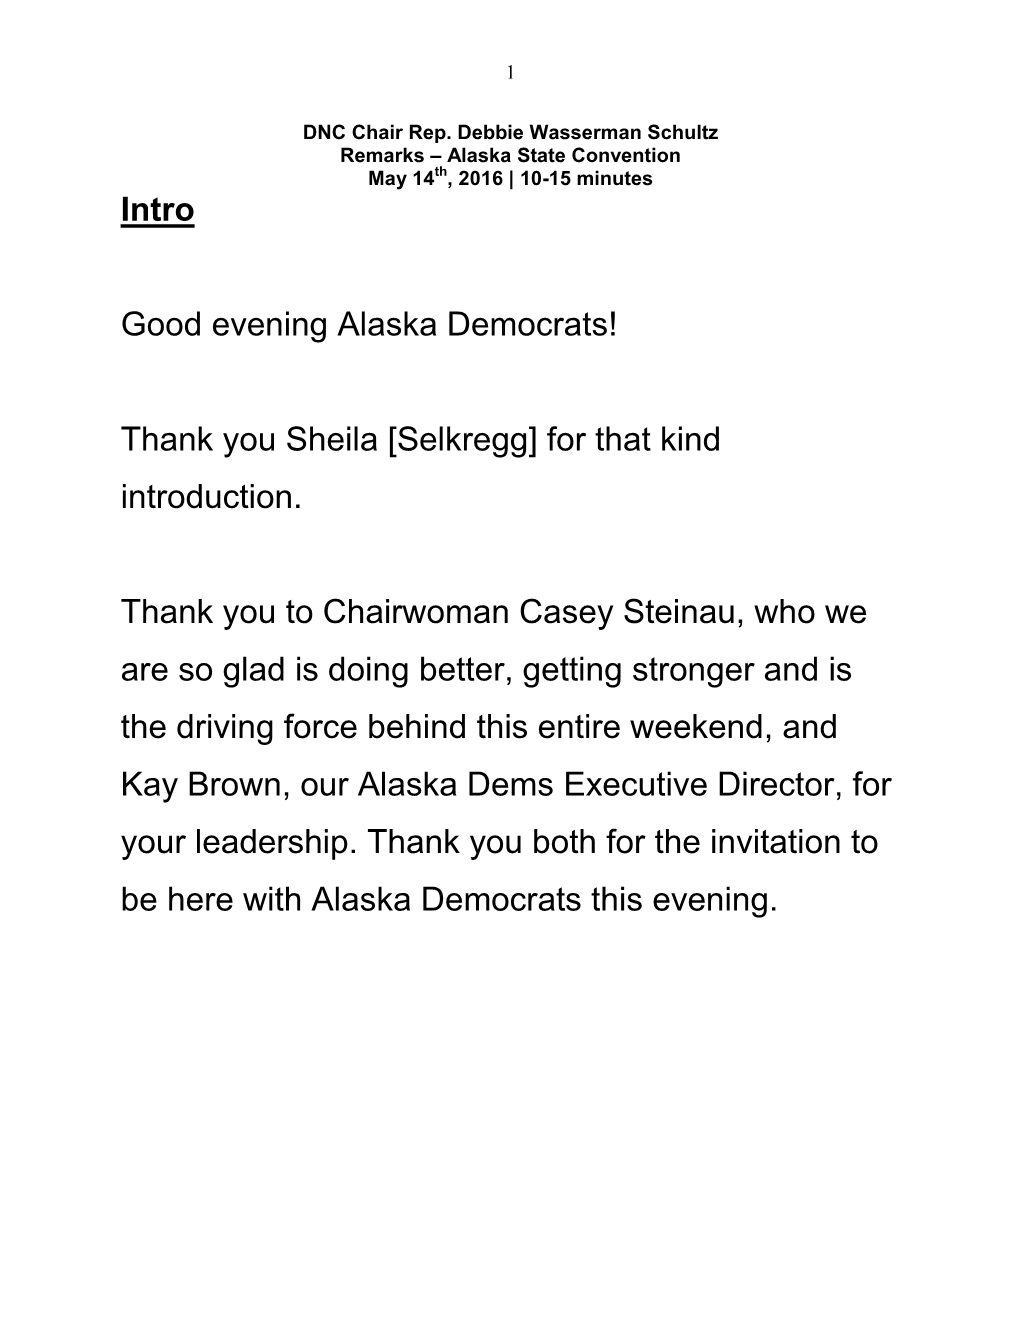 Intro Good Evening Alaska Democrats!